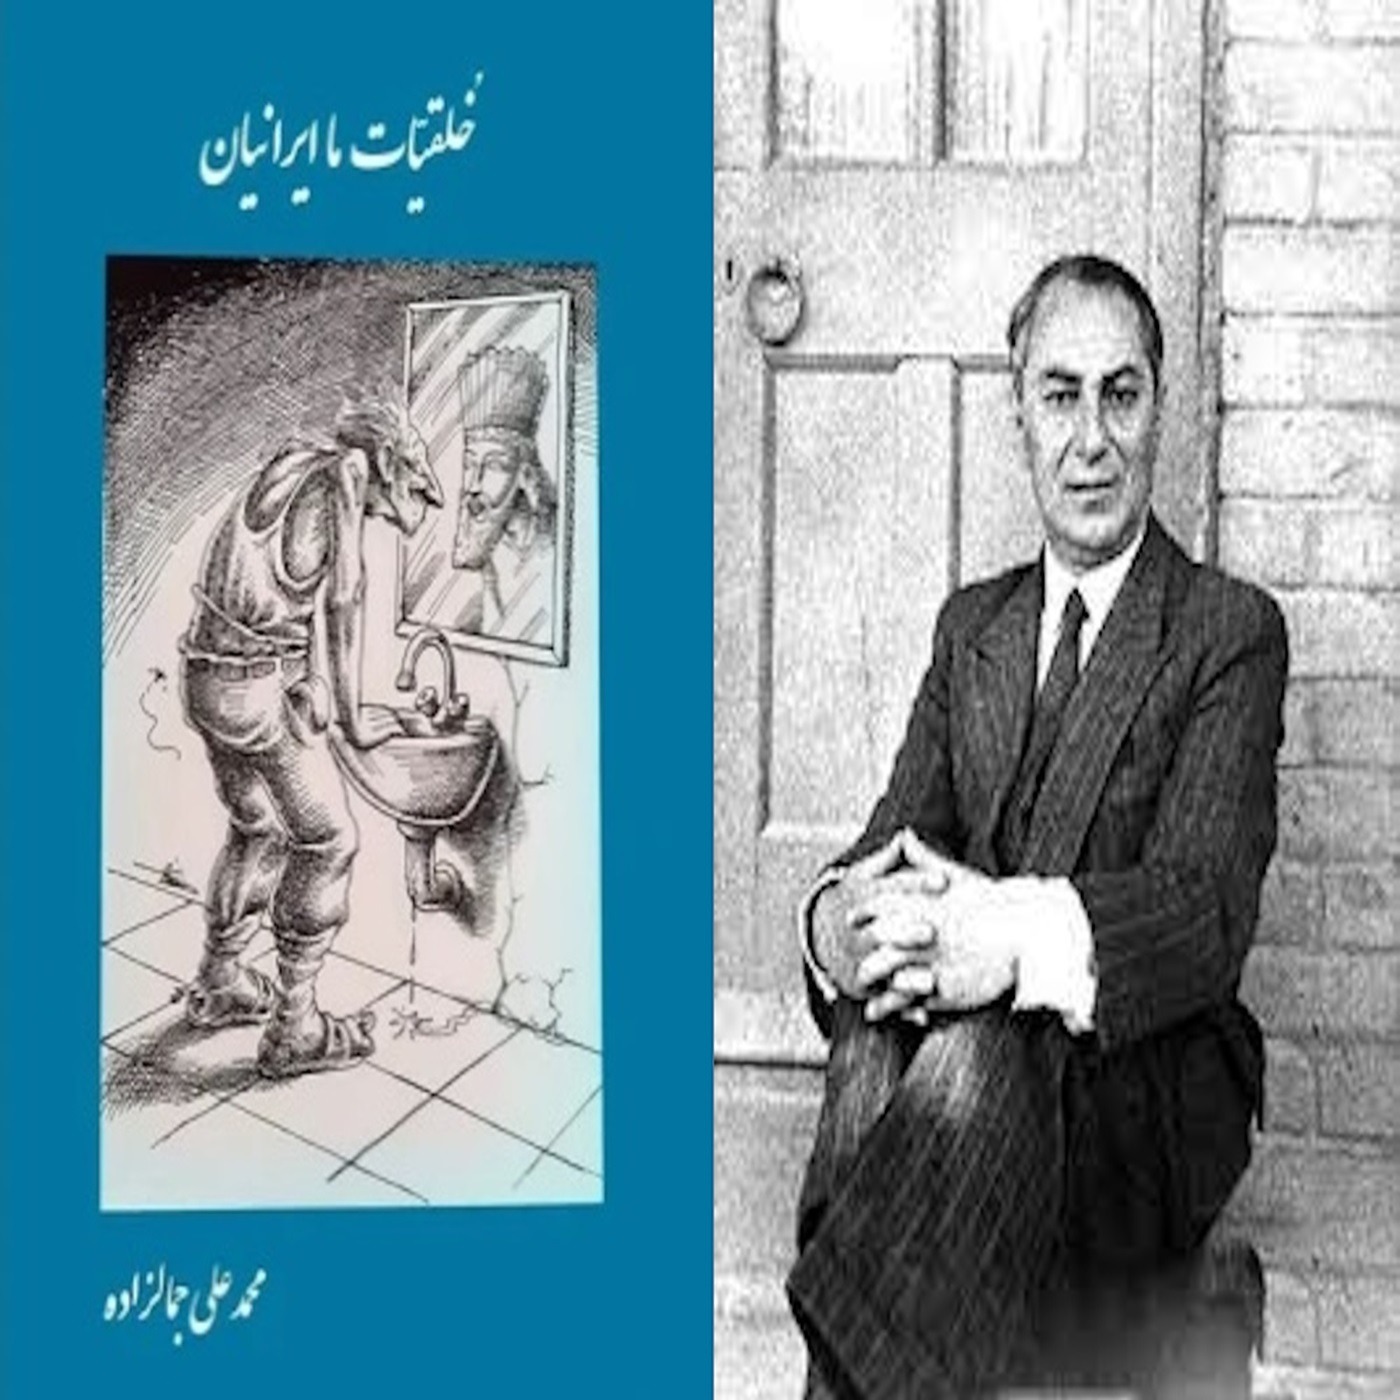 خلقیات ما ایرانیان نوشته سید محمدعلی جمالزاده : بخش پنچ از پنچ